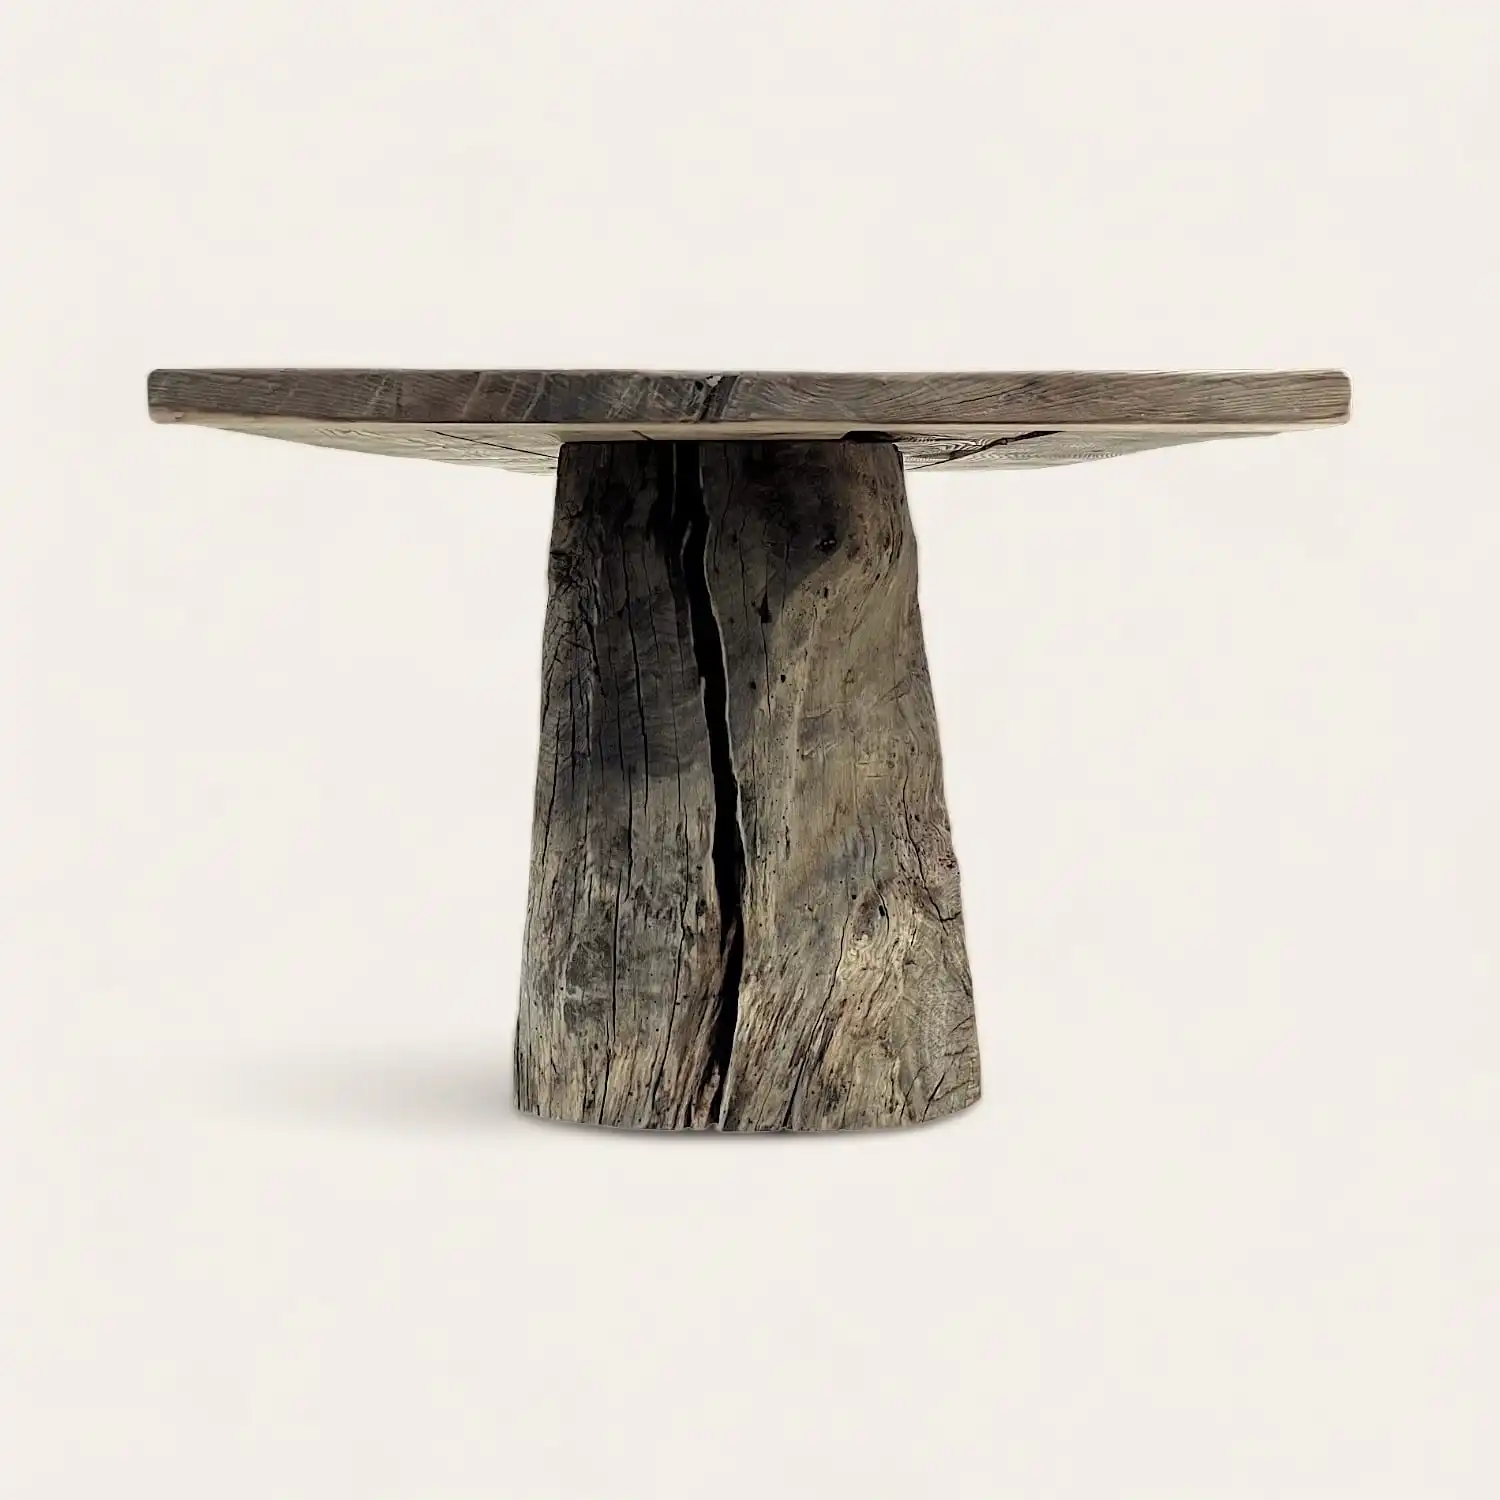  Une table ronde rustique fabriquée à partir d'une souche d'arbre. 